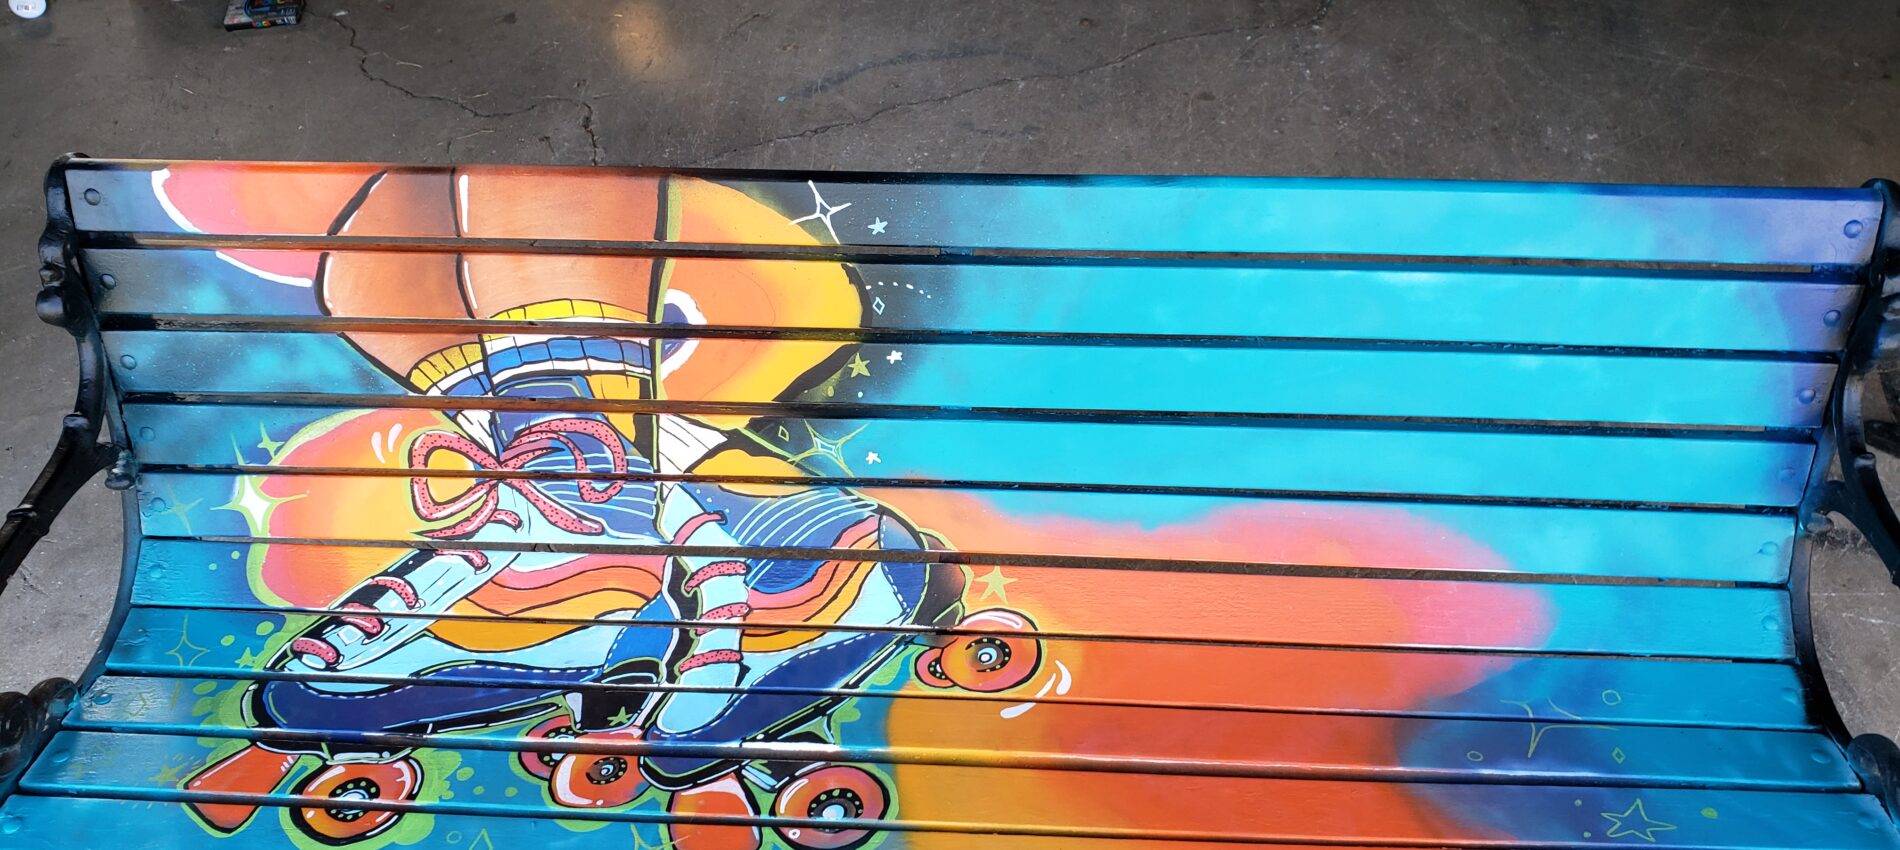 Roller Skates Tillsonburg Bench Mural